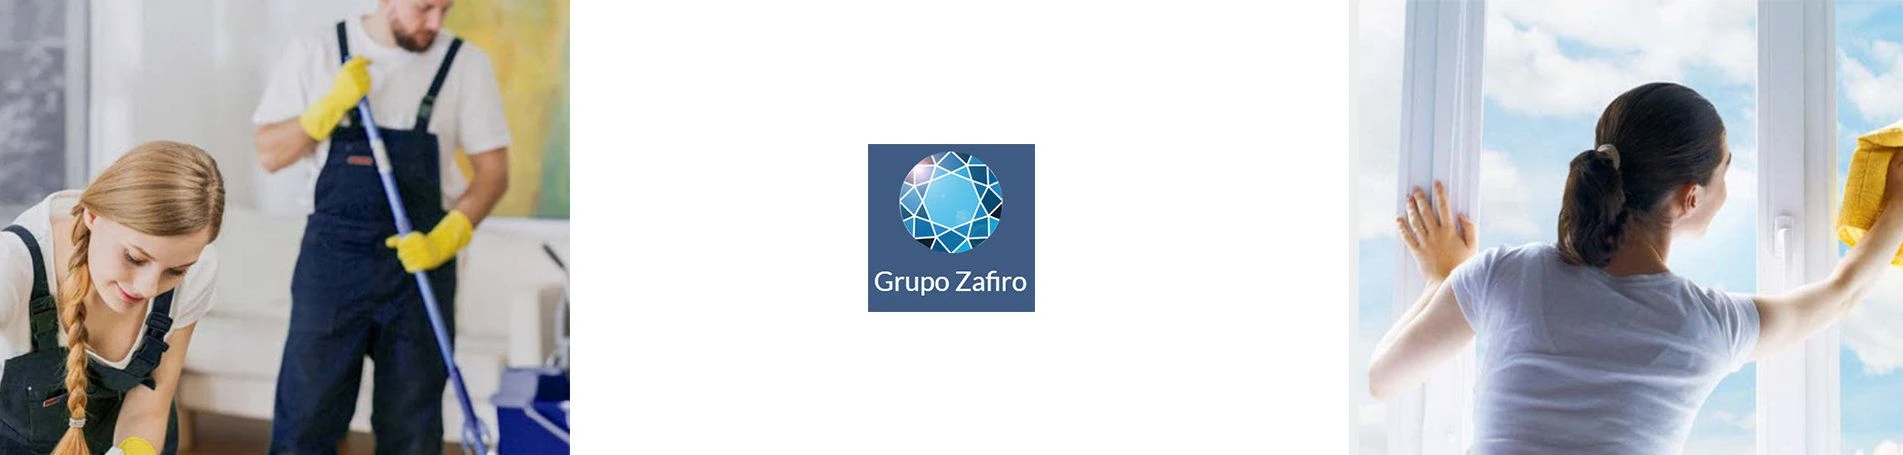 Grupo Zafiro, nuevo cliente de Lifting Group con el objetivo de mejorar su posicionamiento SEO y optimizar su estrategia SEM